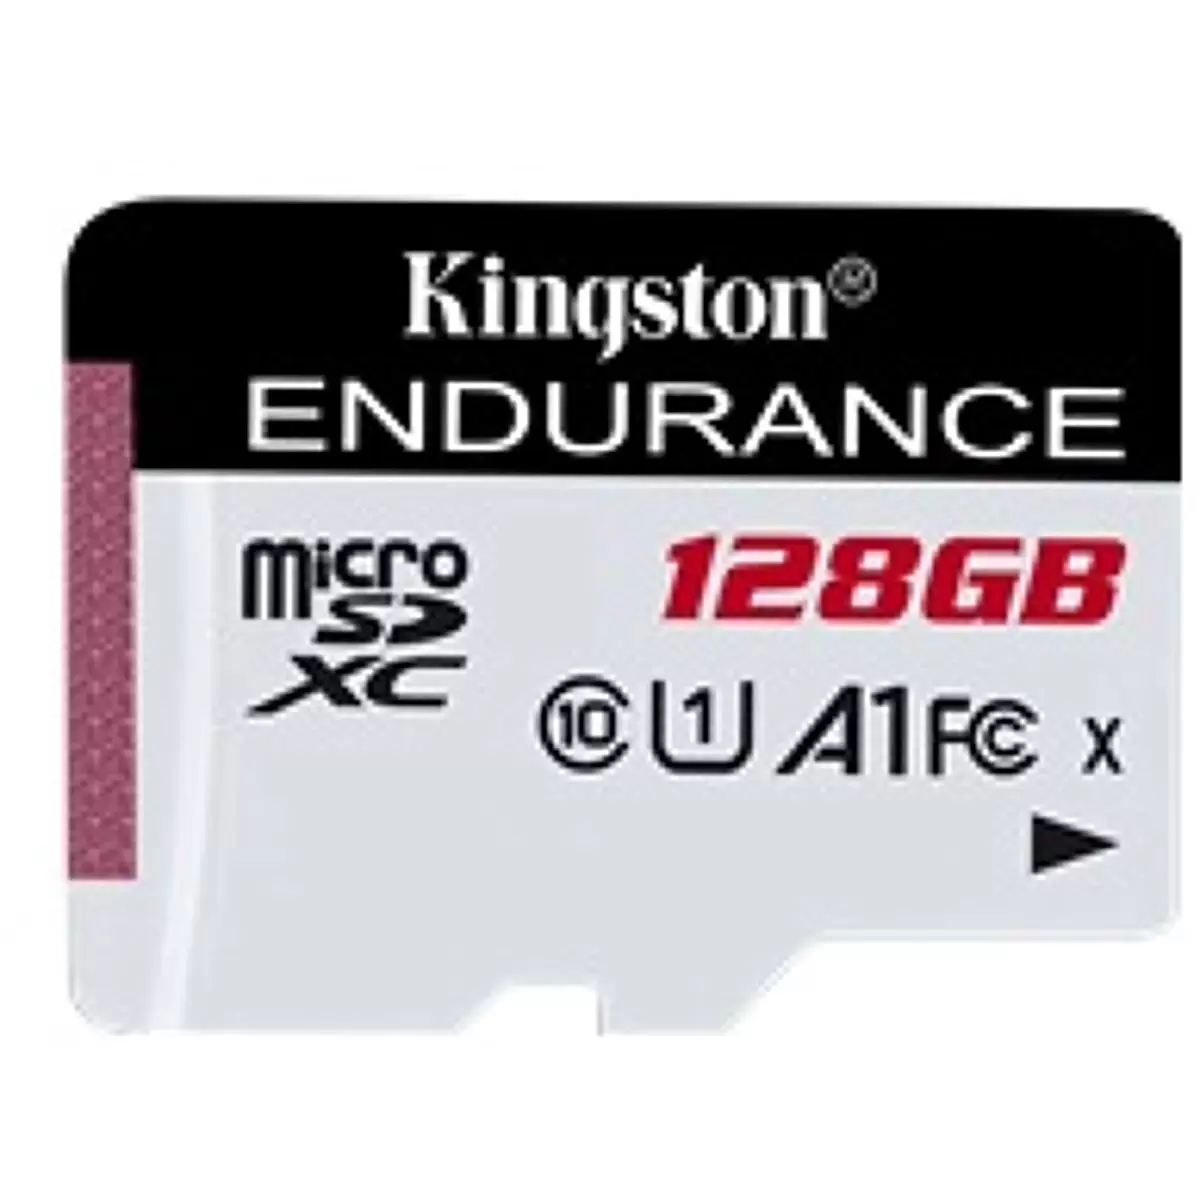 KINGSTON 128GB microSDXC Endurance C10